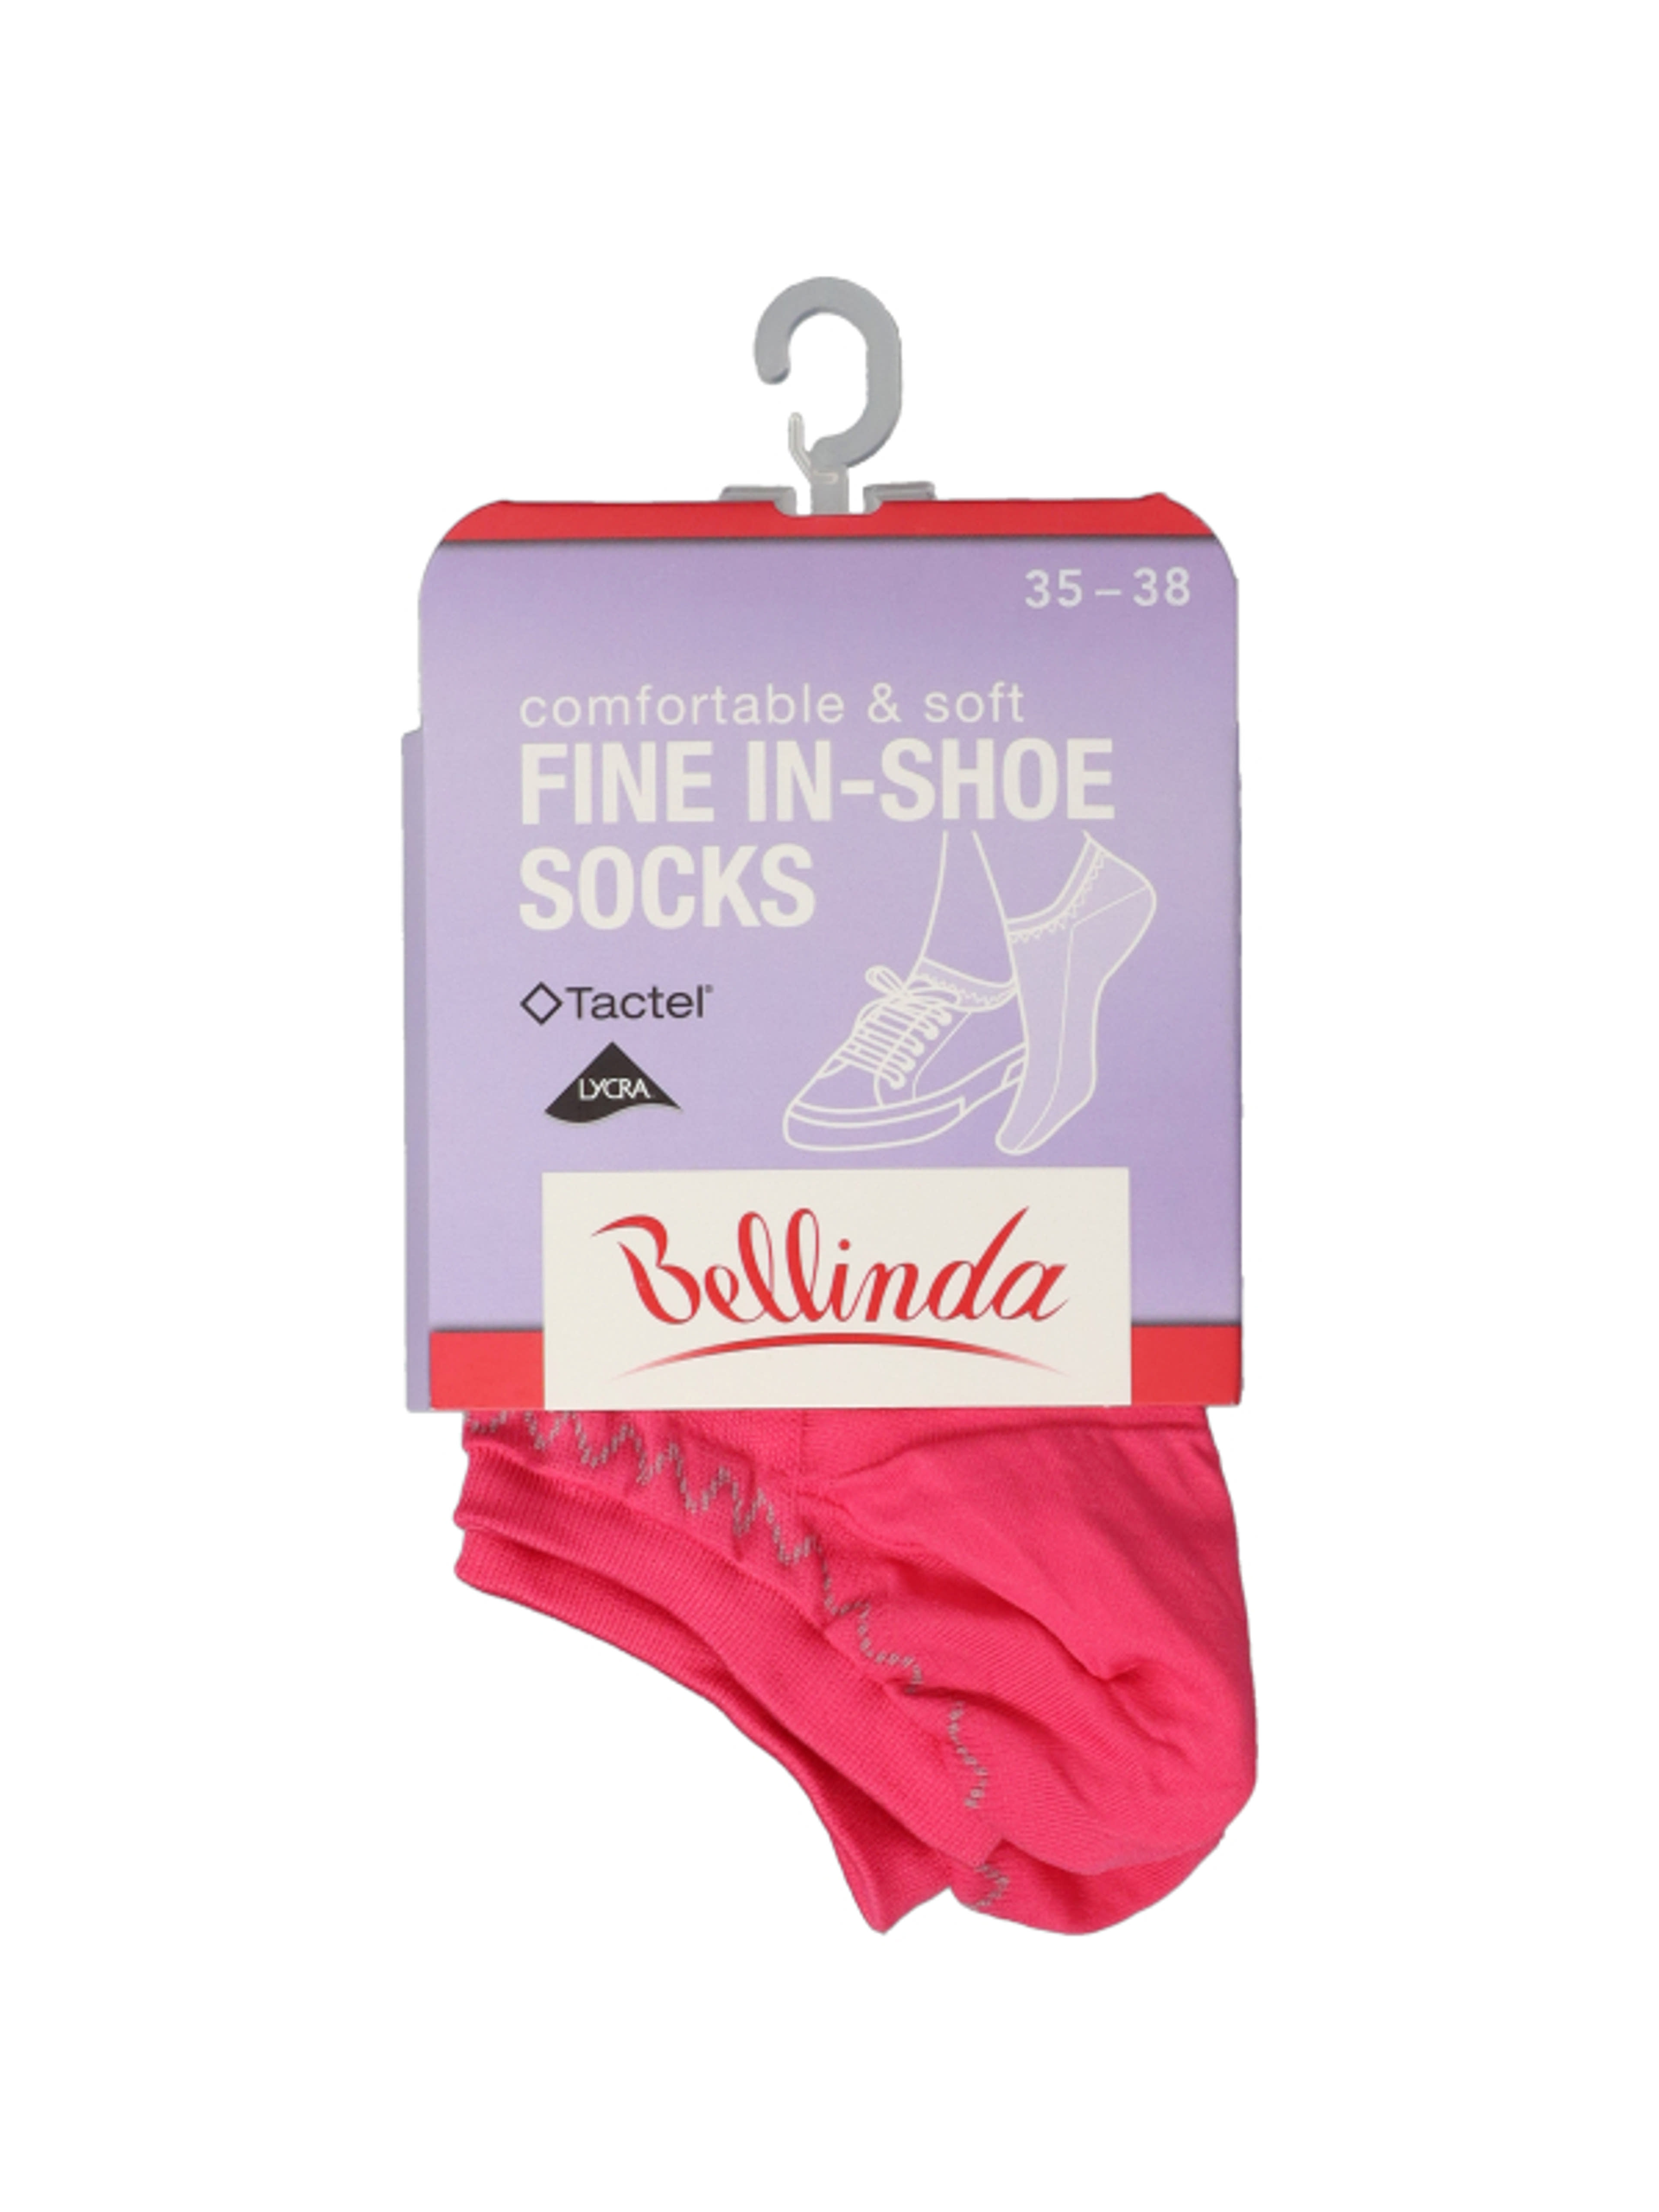 Bellinda Fine In-Shoe női zokni, 35-38 - 1 pár-1